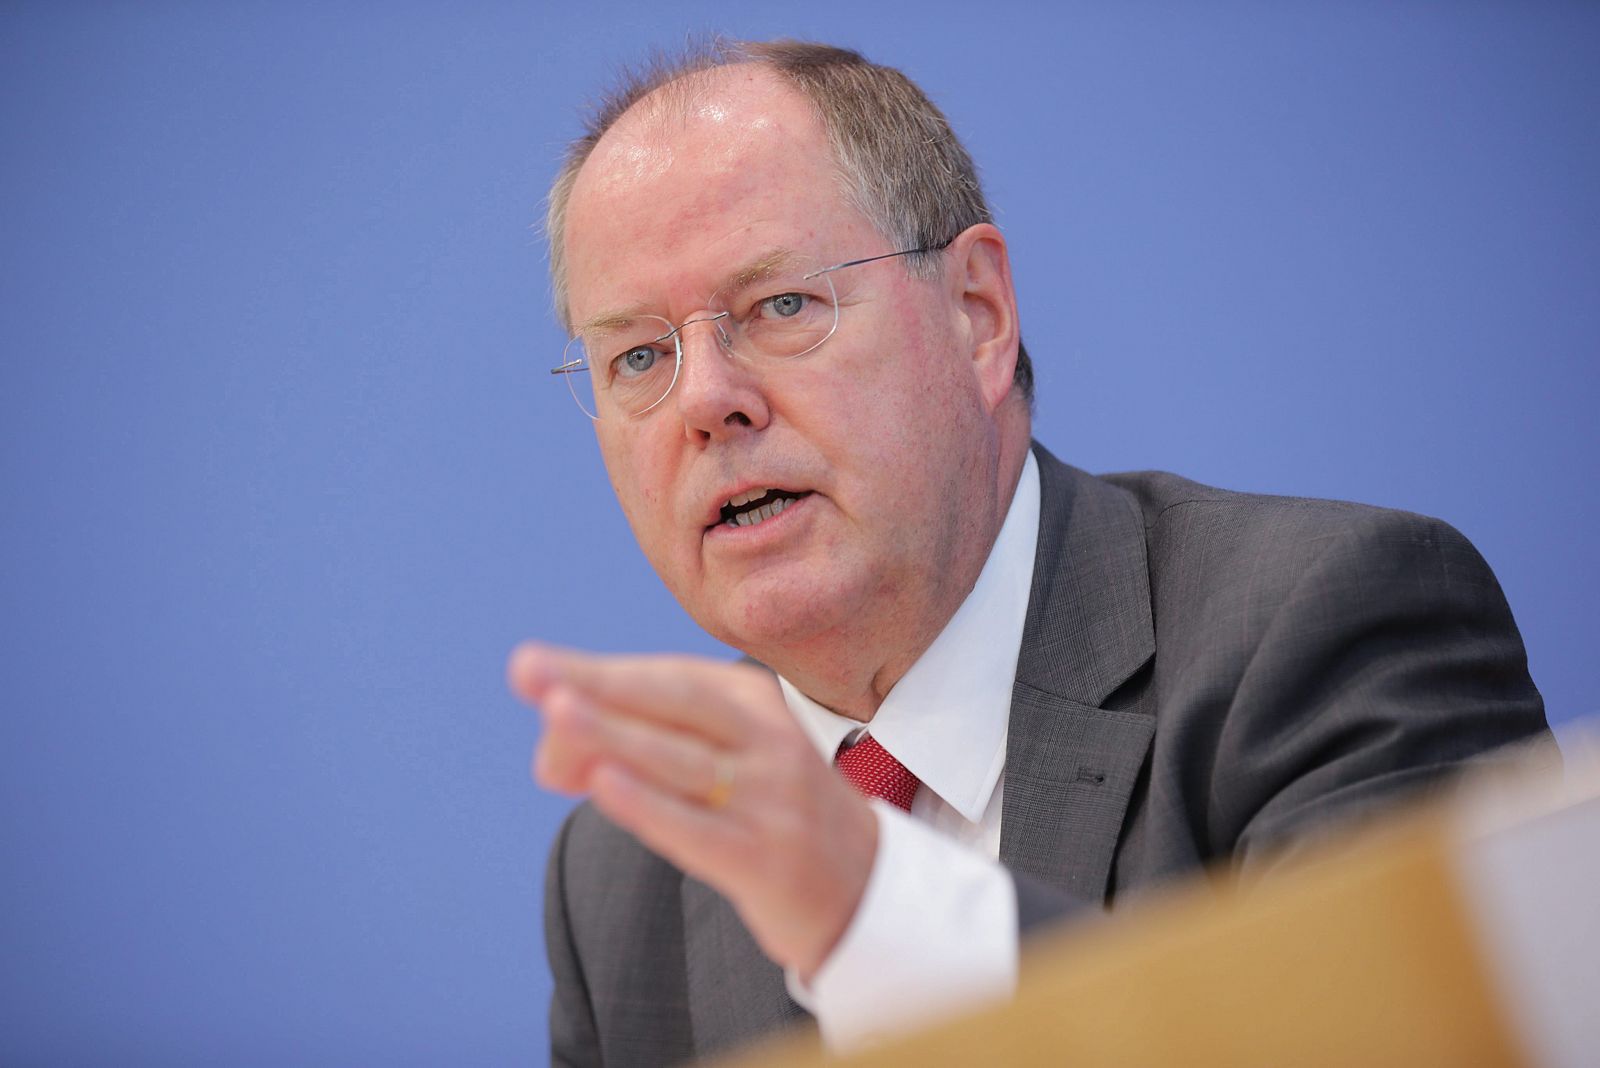 El candidato del Partido Socialdemócrata (SPD), Peer Steinbrück, en la presentación de su programa para los 100 primeros días de Gobierno.